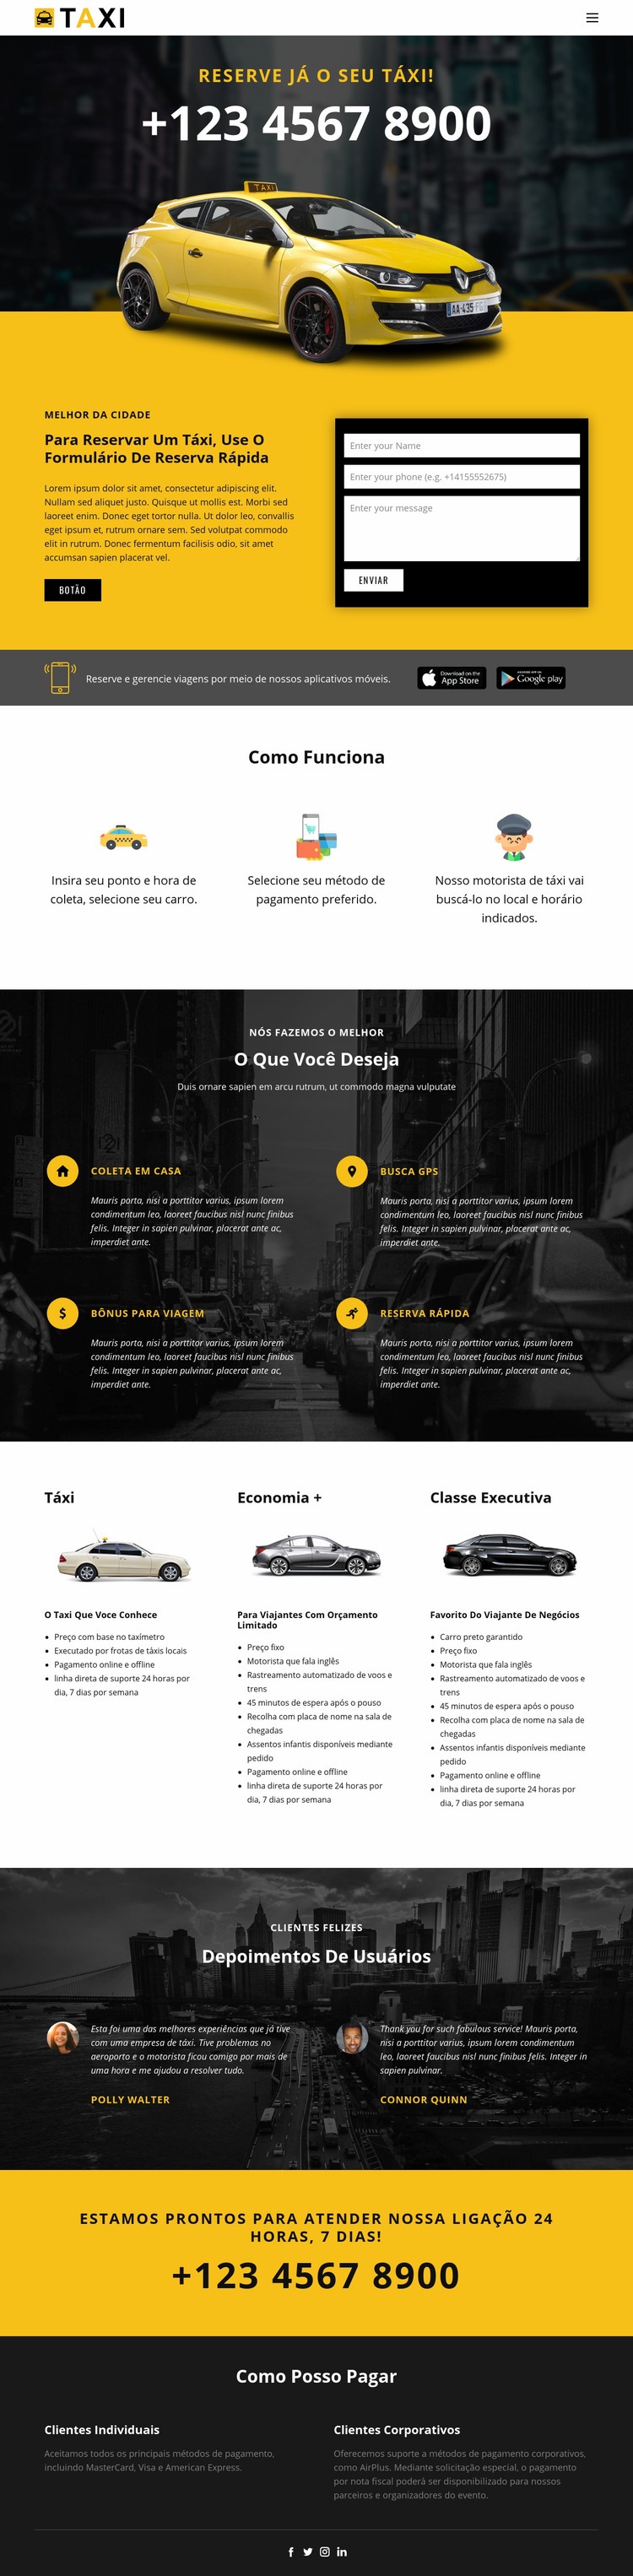 Carros táxi mais rápidos Modelo HTML5